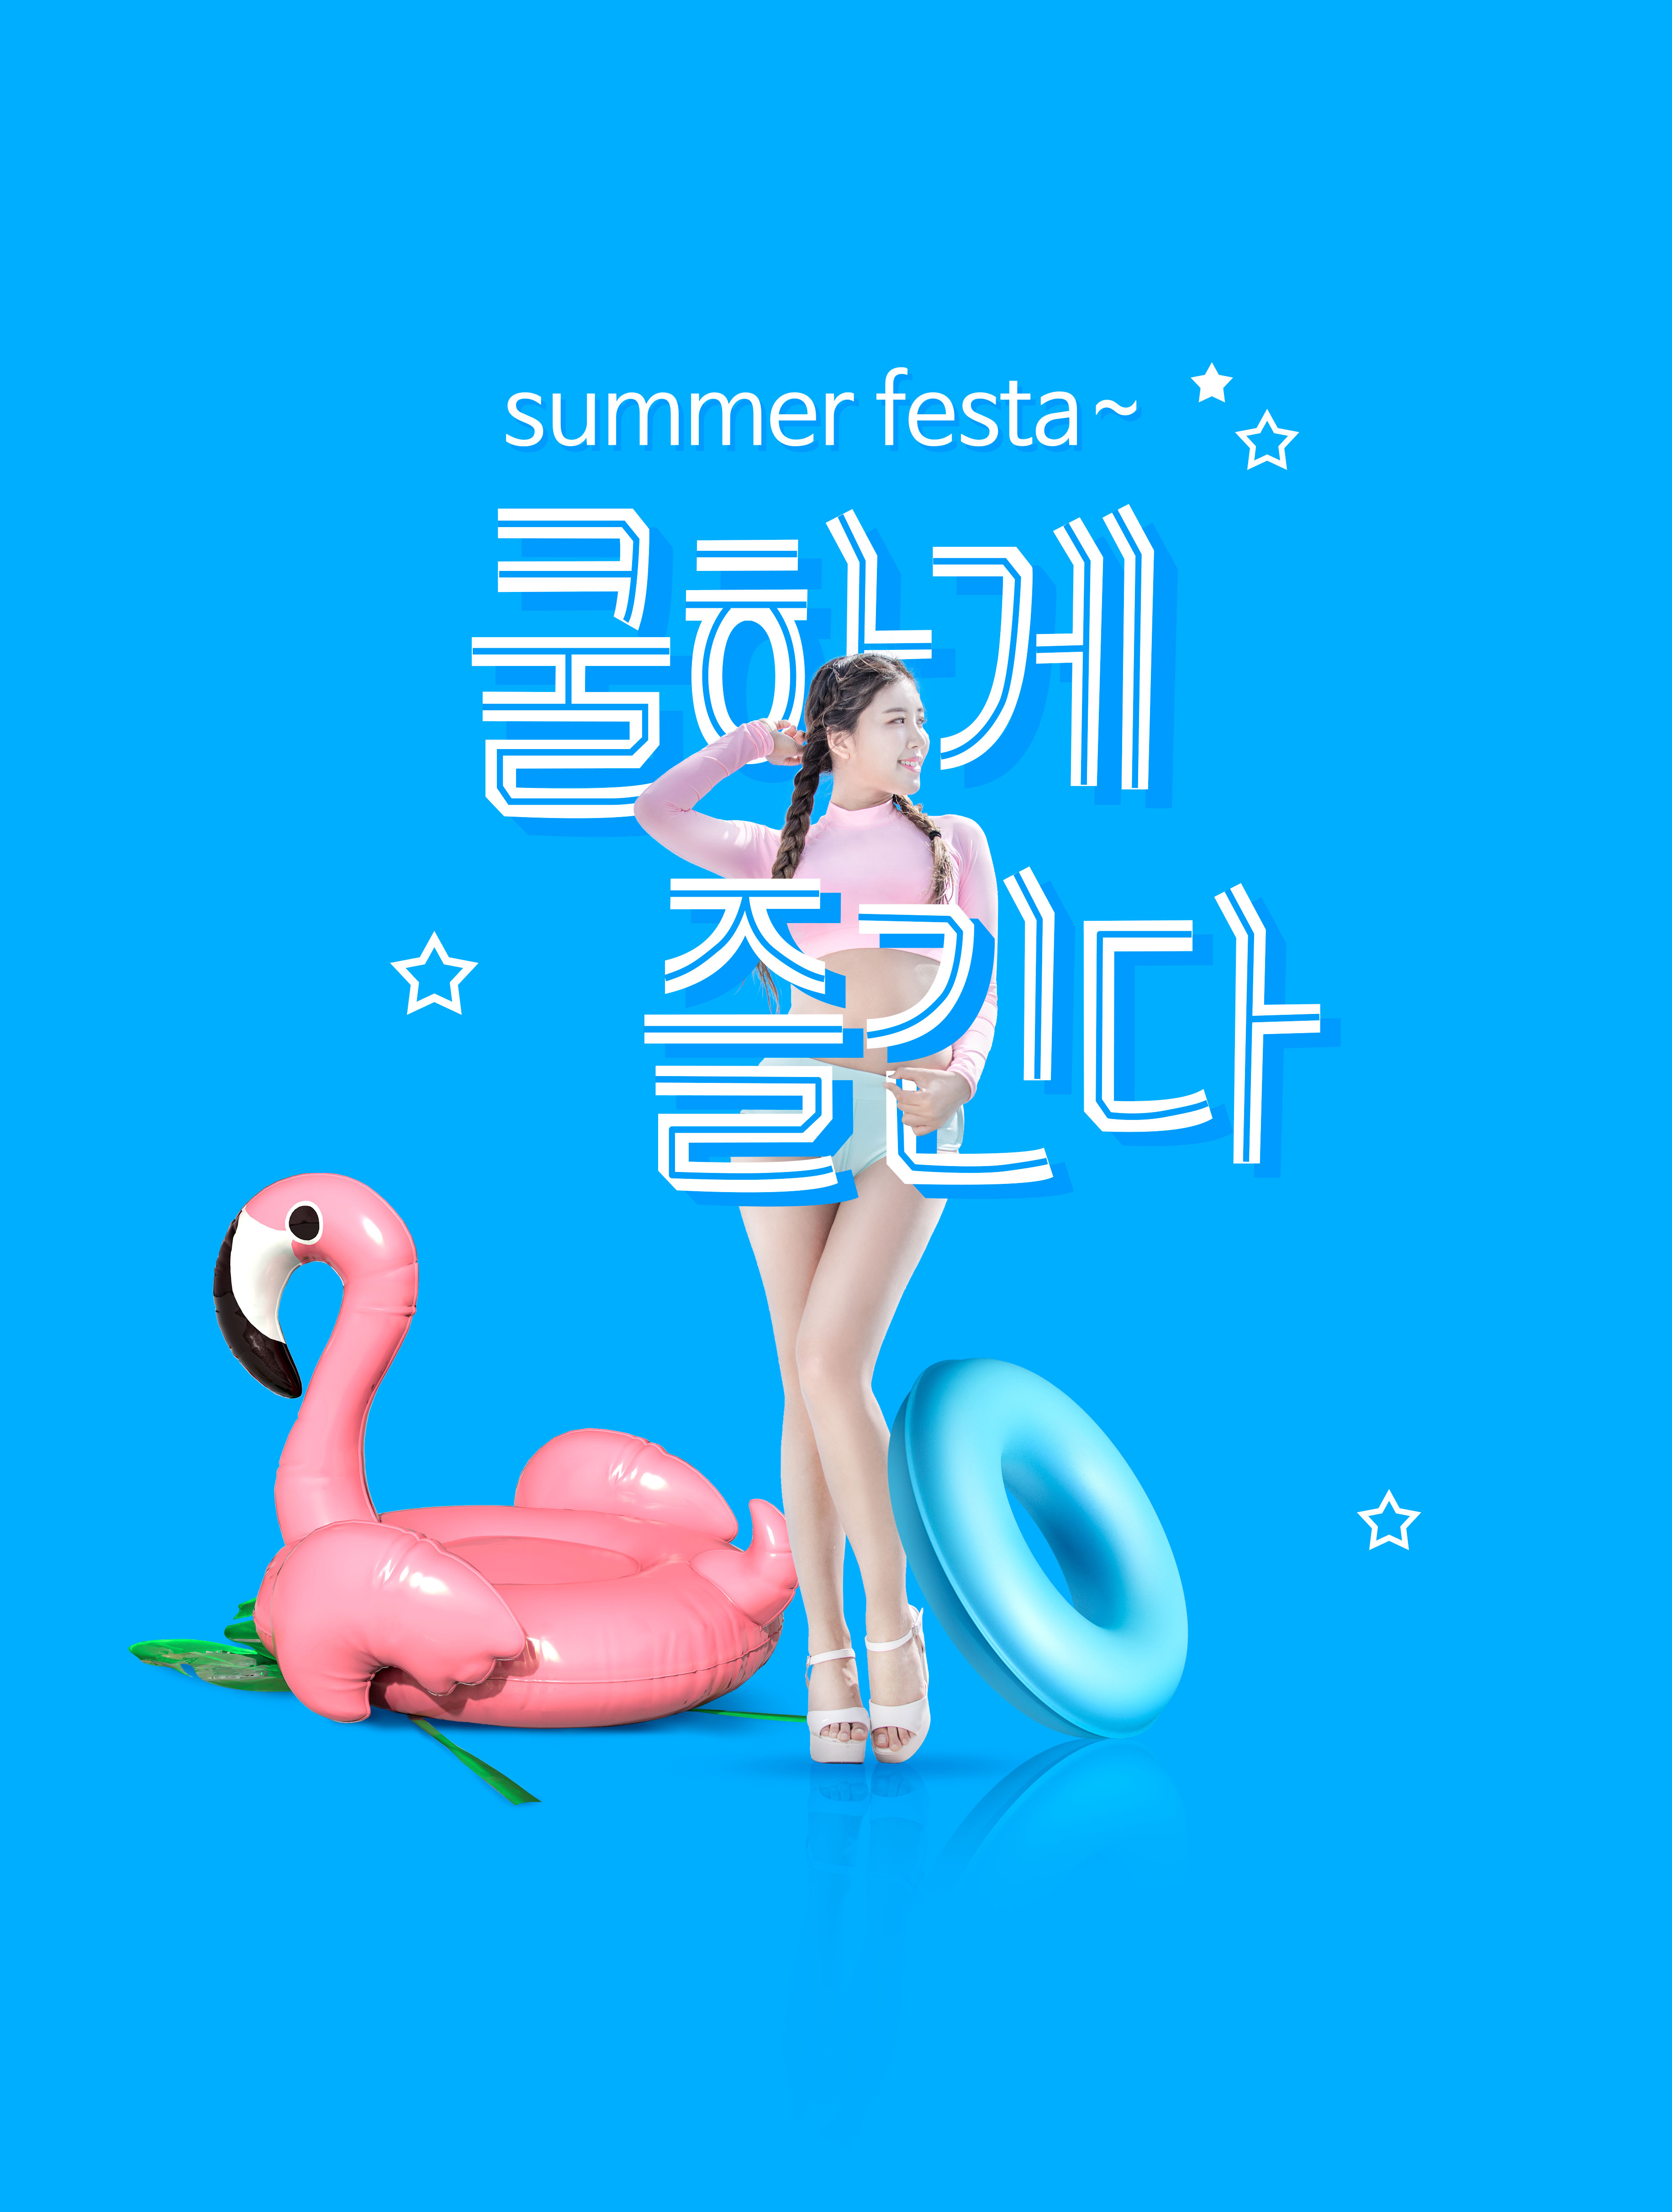 蓝色主题夏季活动聚会宣传海报设计模板插图